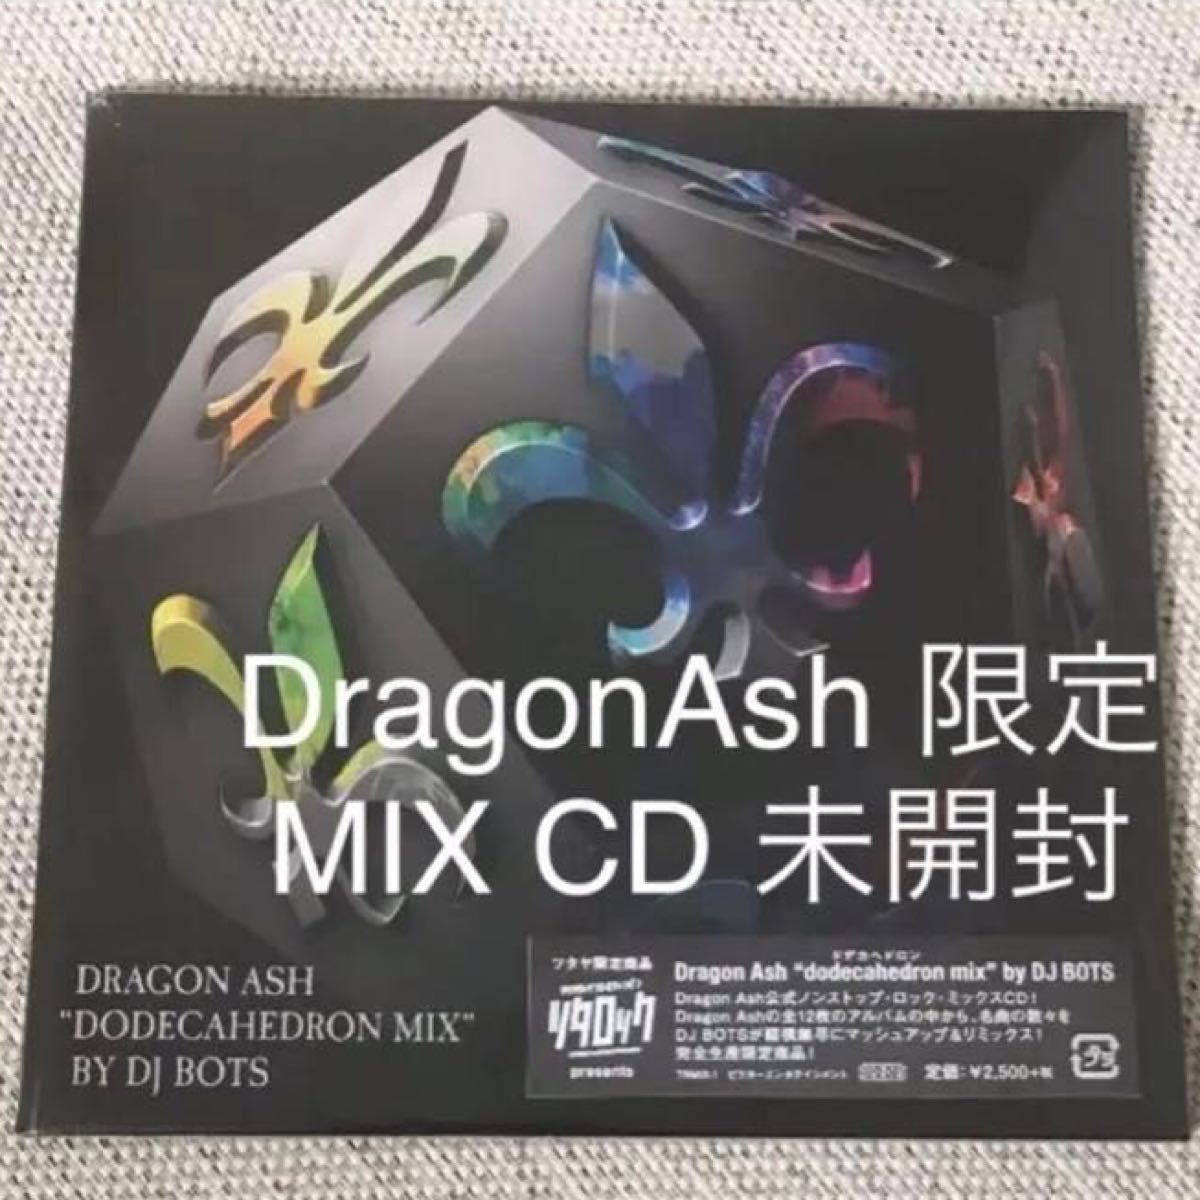 DragonAsh "dodecahedron mix" by DJ BOTSドデカヘドロン ミックス CD【限定完全生産限定盤】